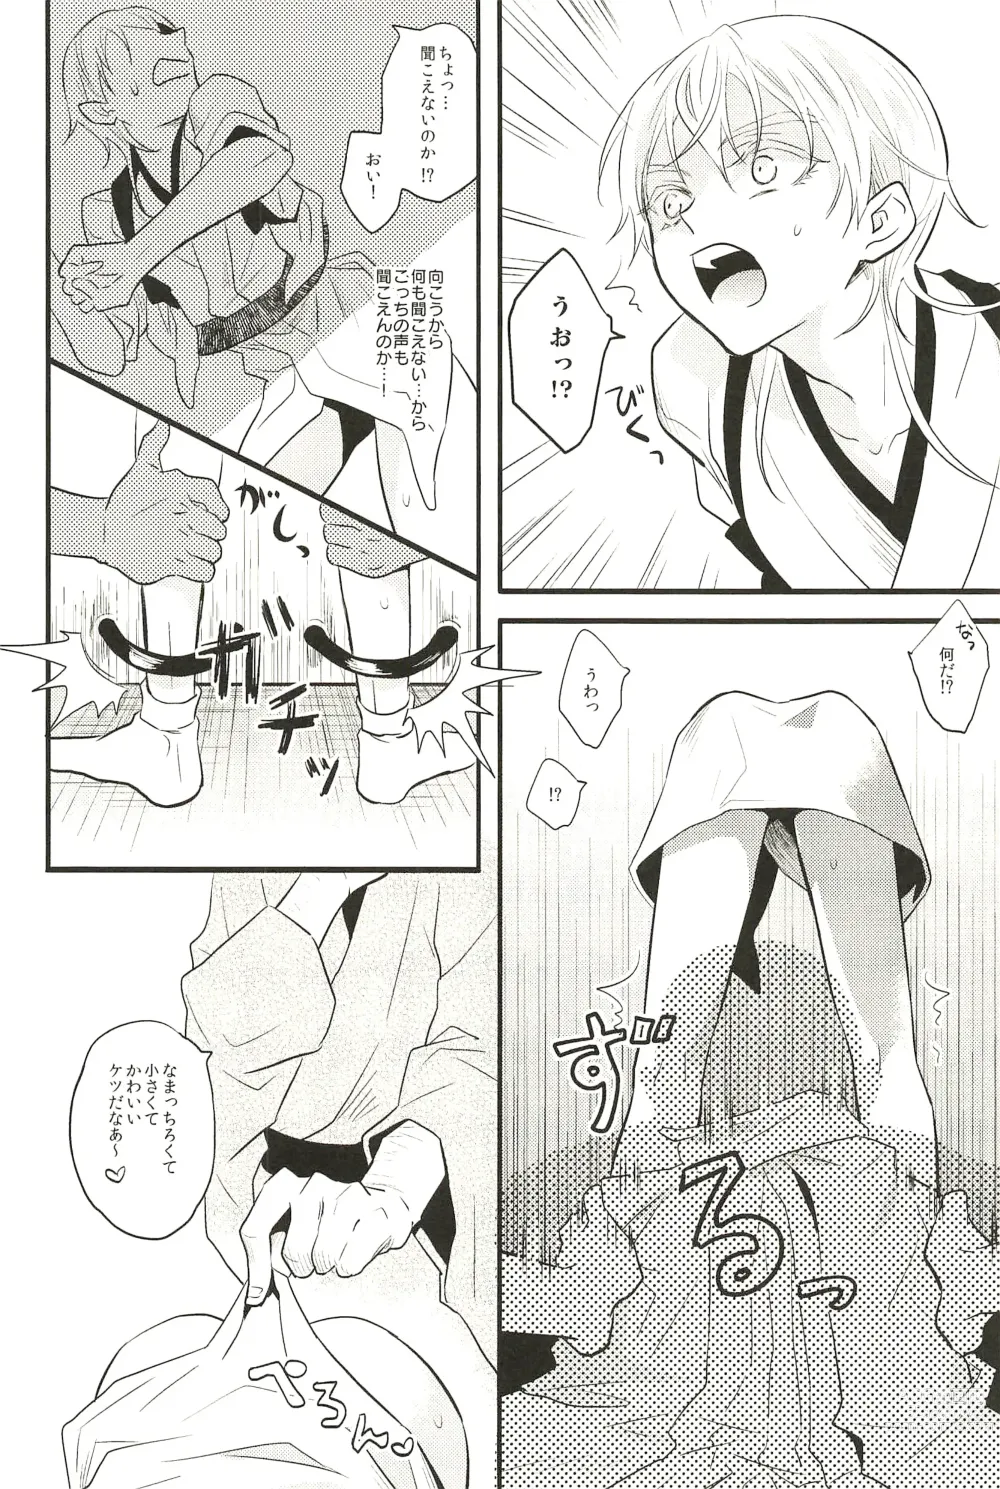 Page 8 of doujinshi Iromono Shu